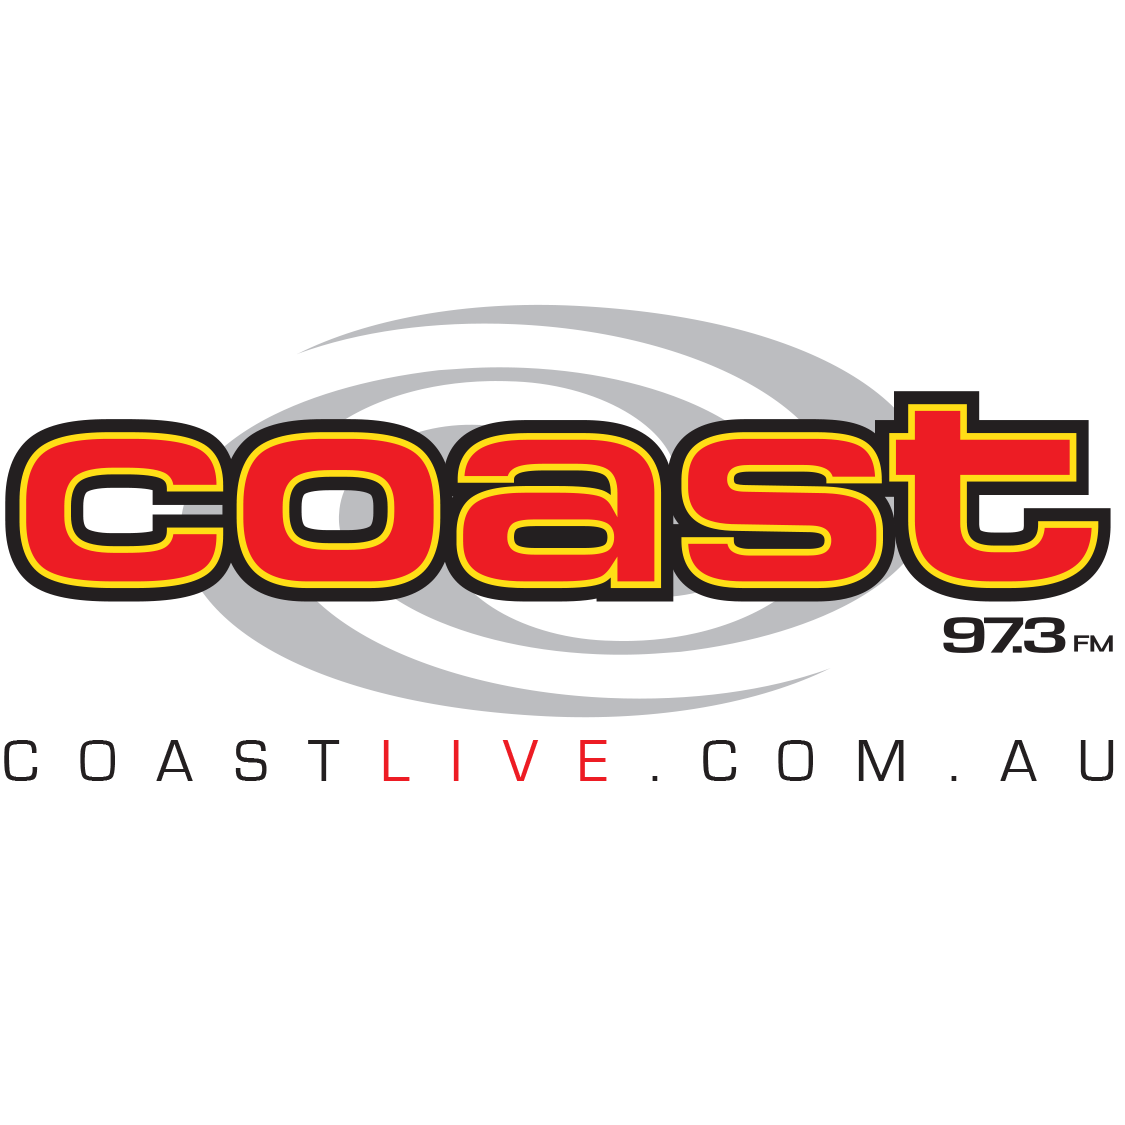 www.coastlive.com.au